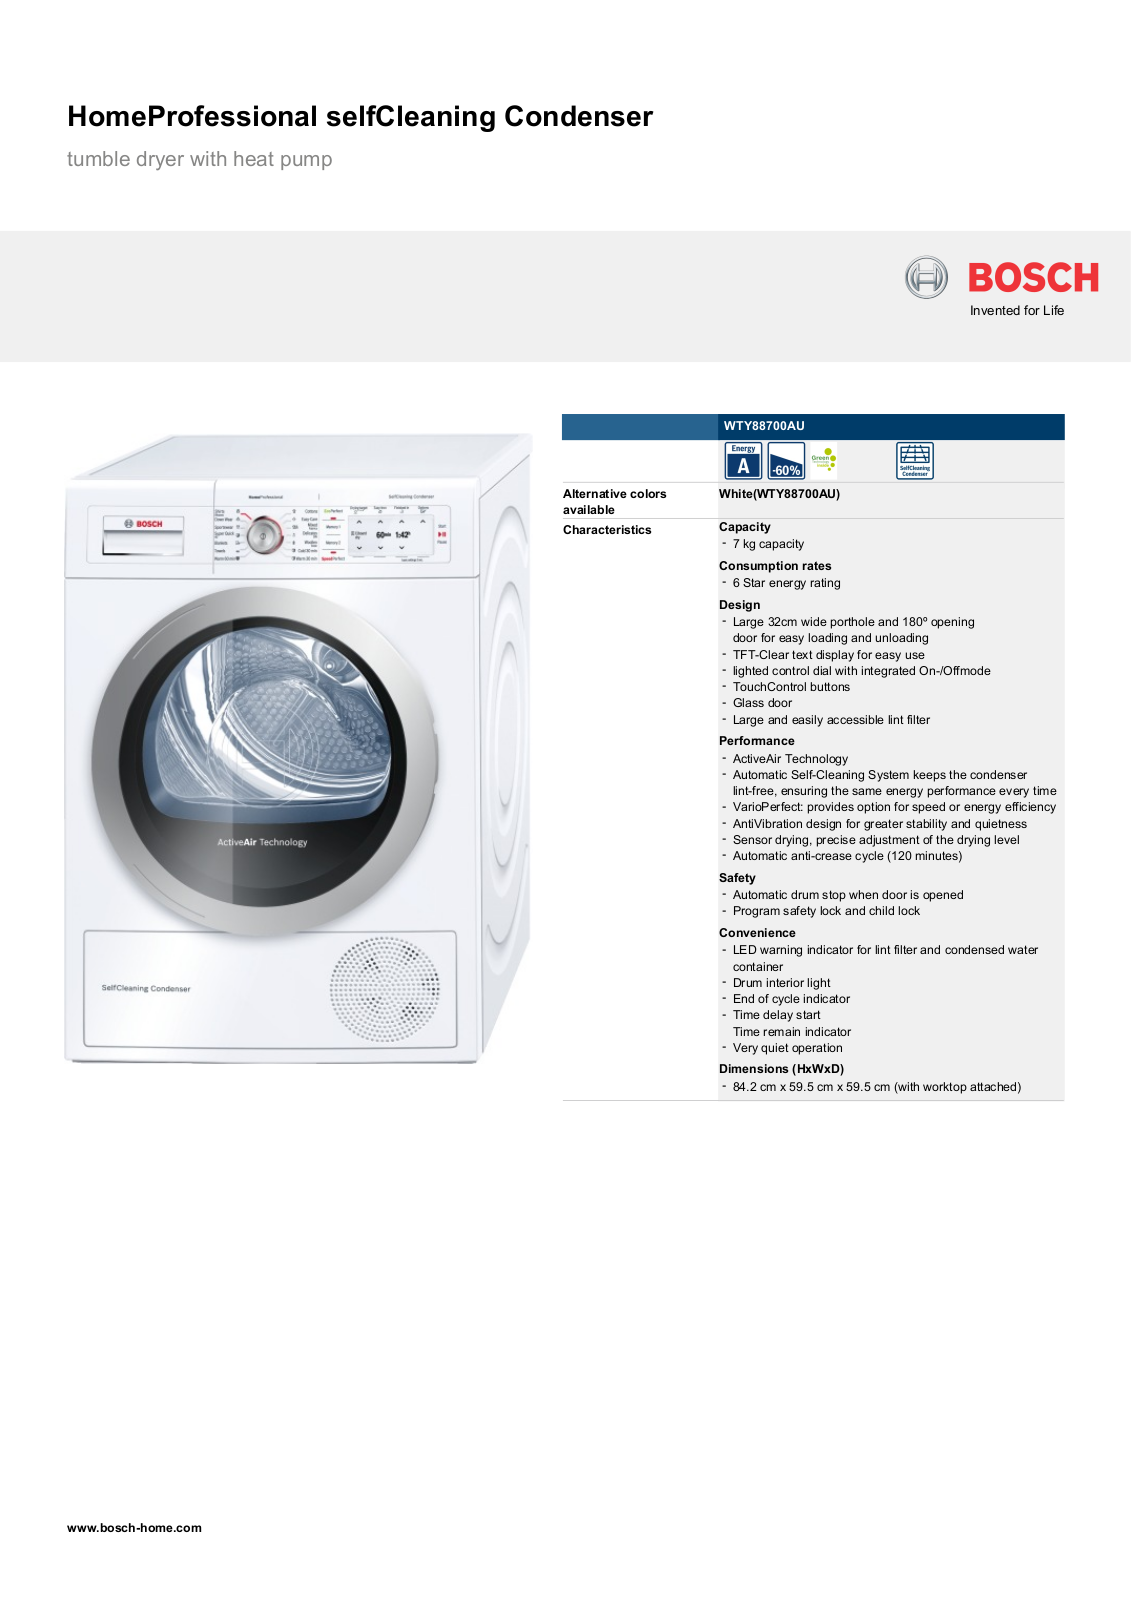 Bosch WTY88700AU Product Sheet